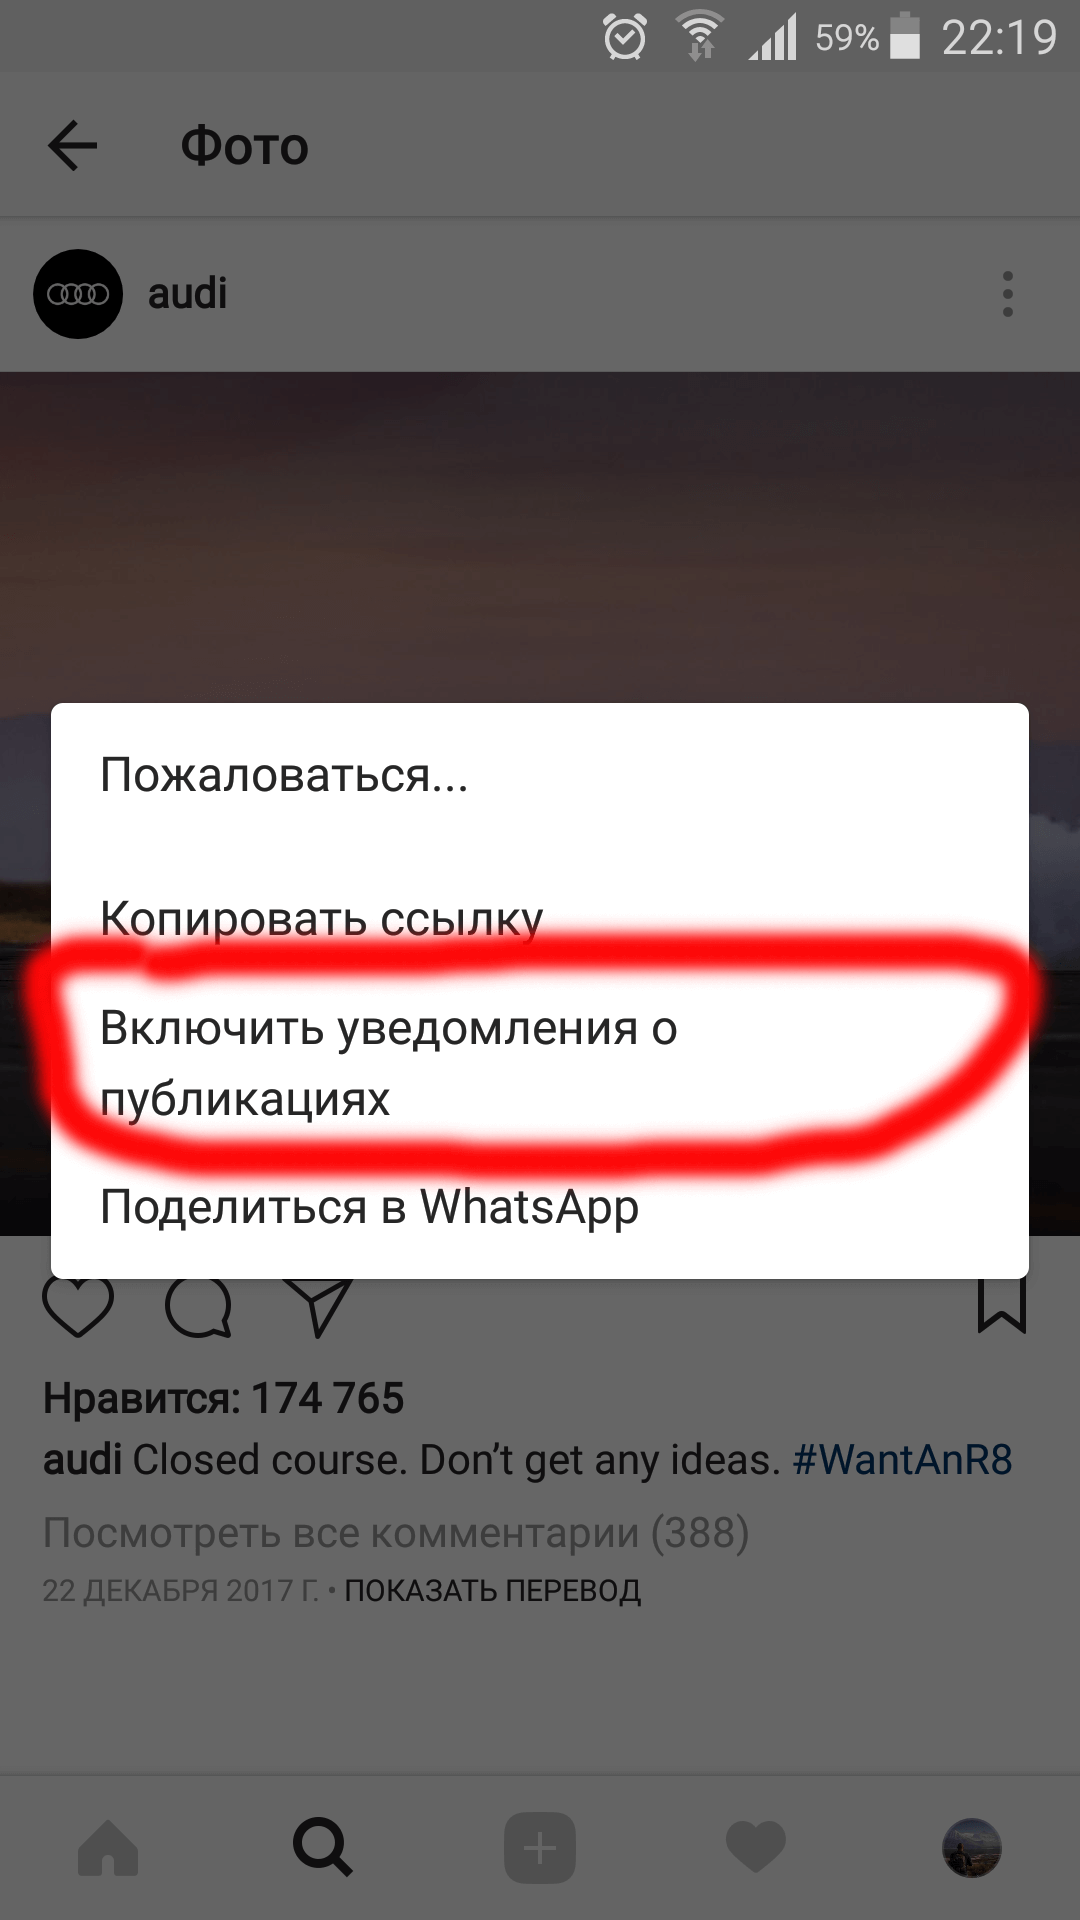 Як поділитися посиланням на Instagram: Ватсап, Вконтакте, Телеграм, на свій профіль